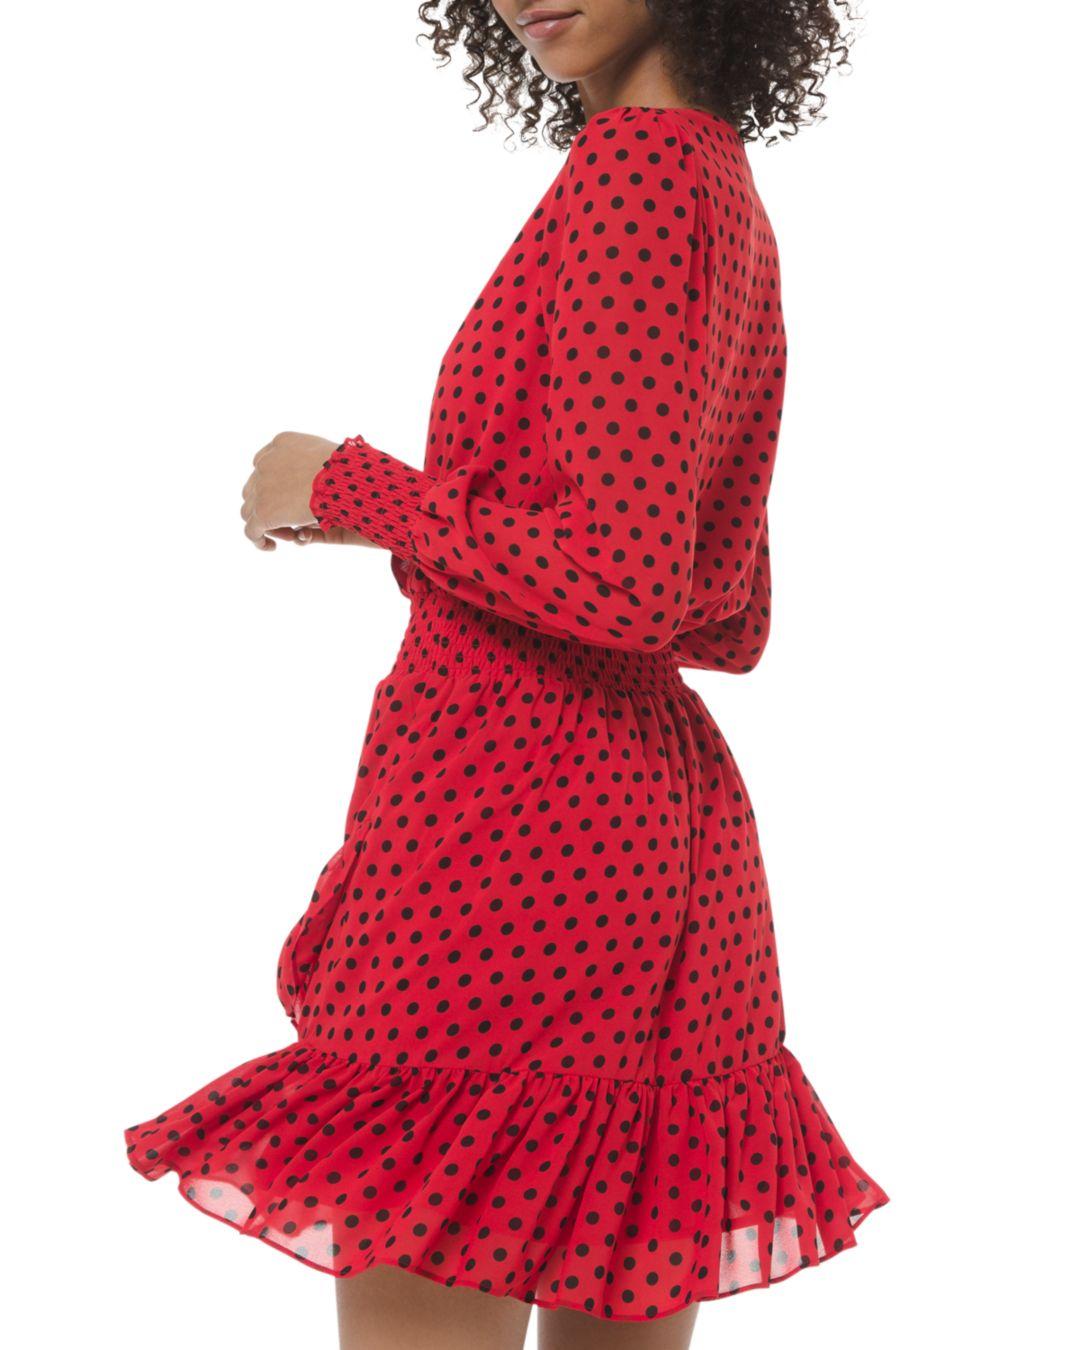 Michael Kors Ruffled FauxWrap Dress Regular  Petite  Macys